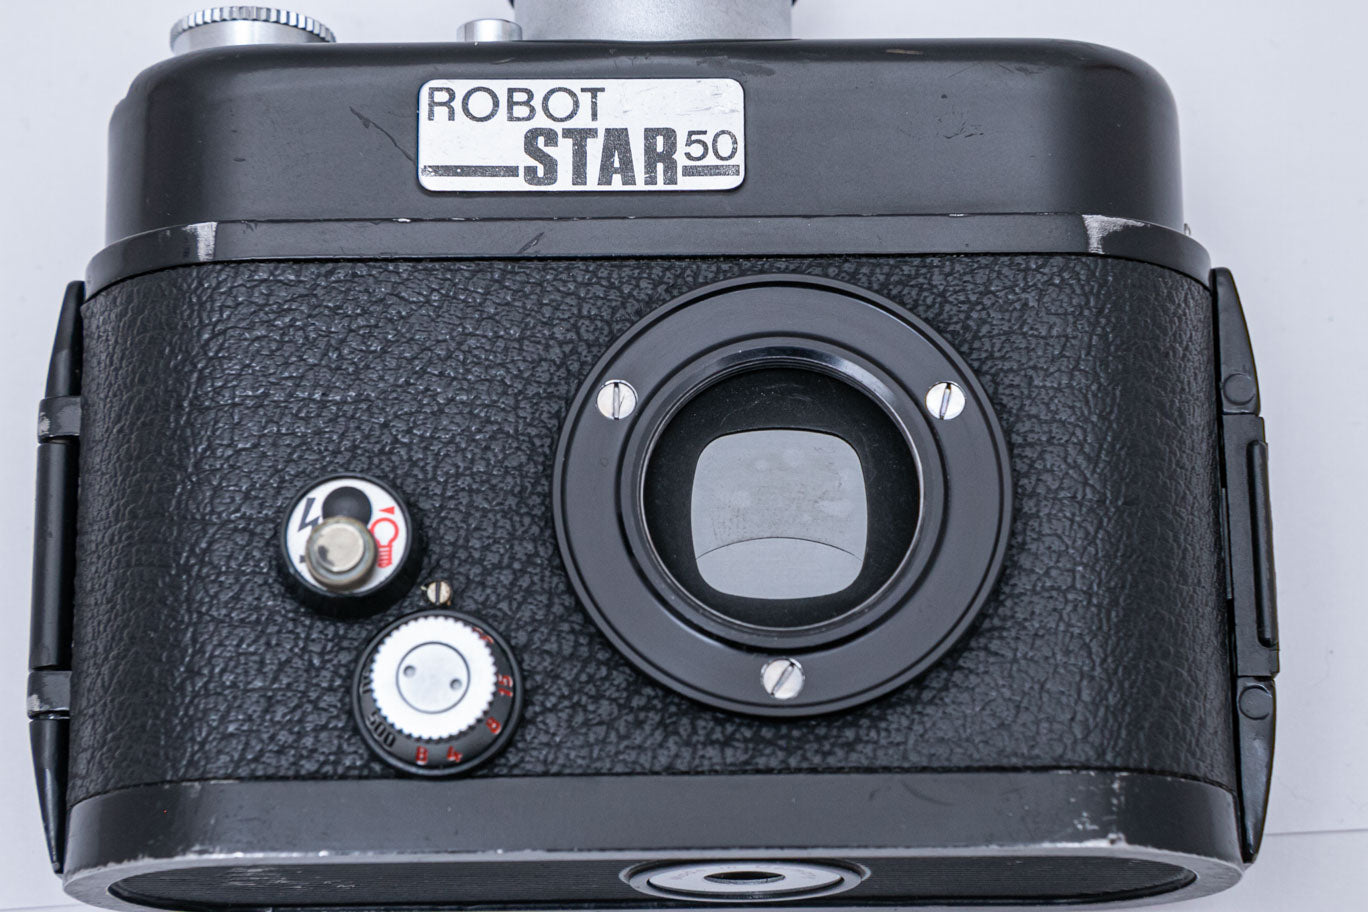 ROBOT STAR 50, Xenar 38mm F2.8 付き